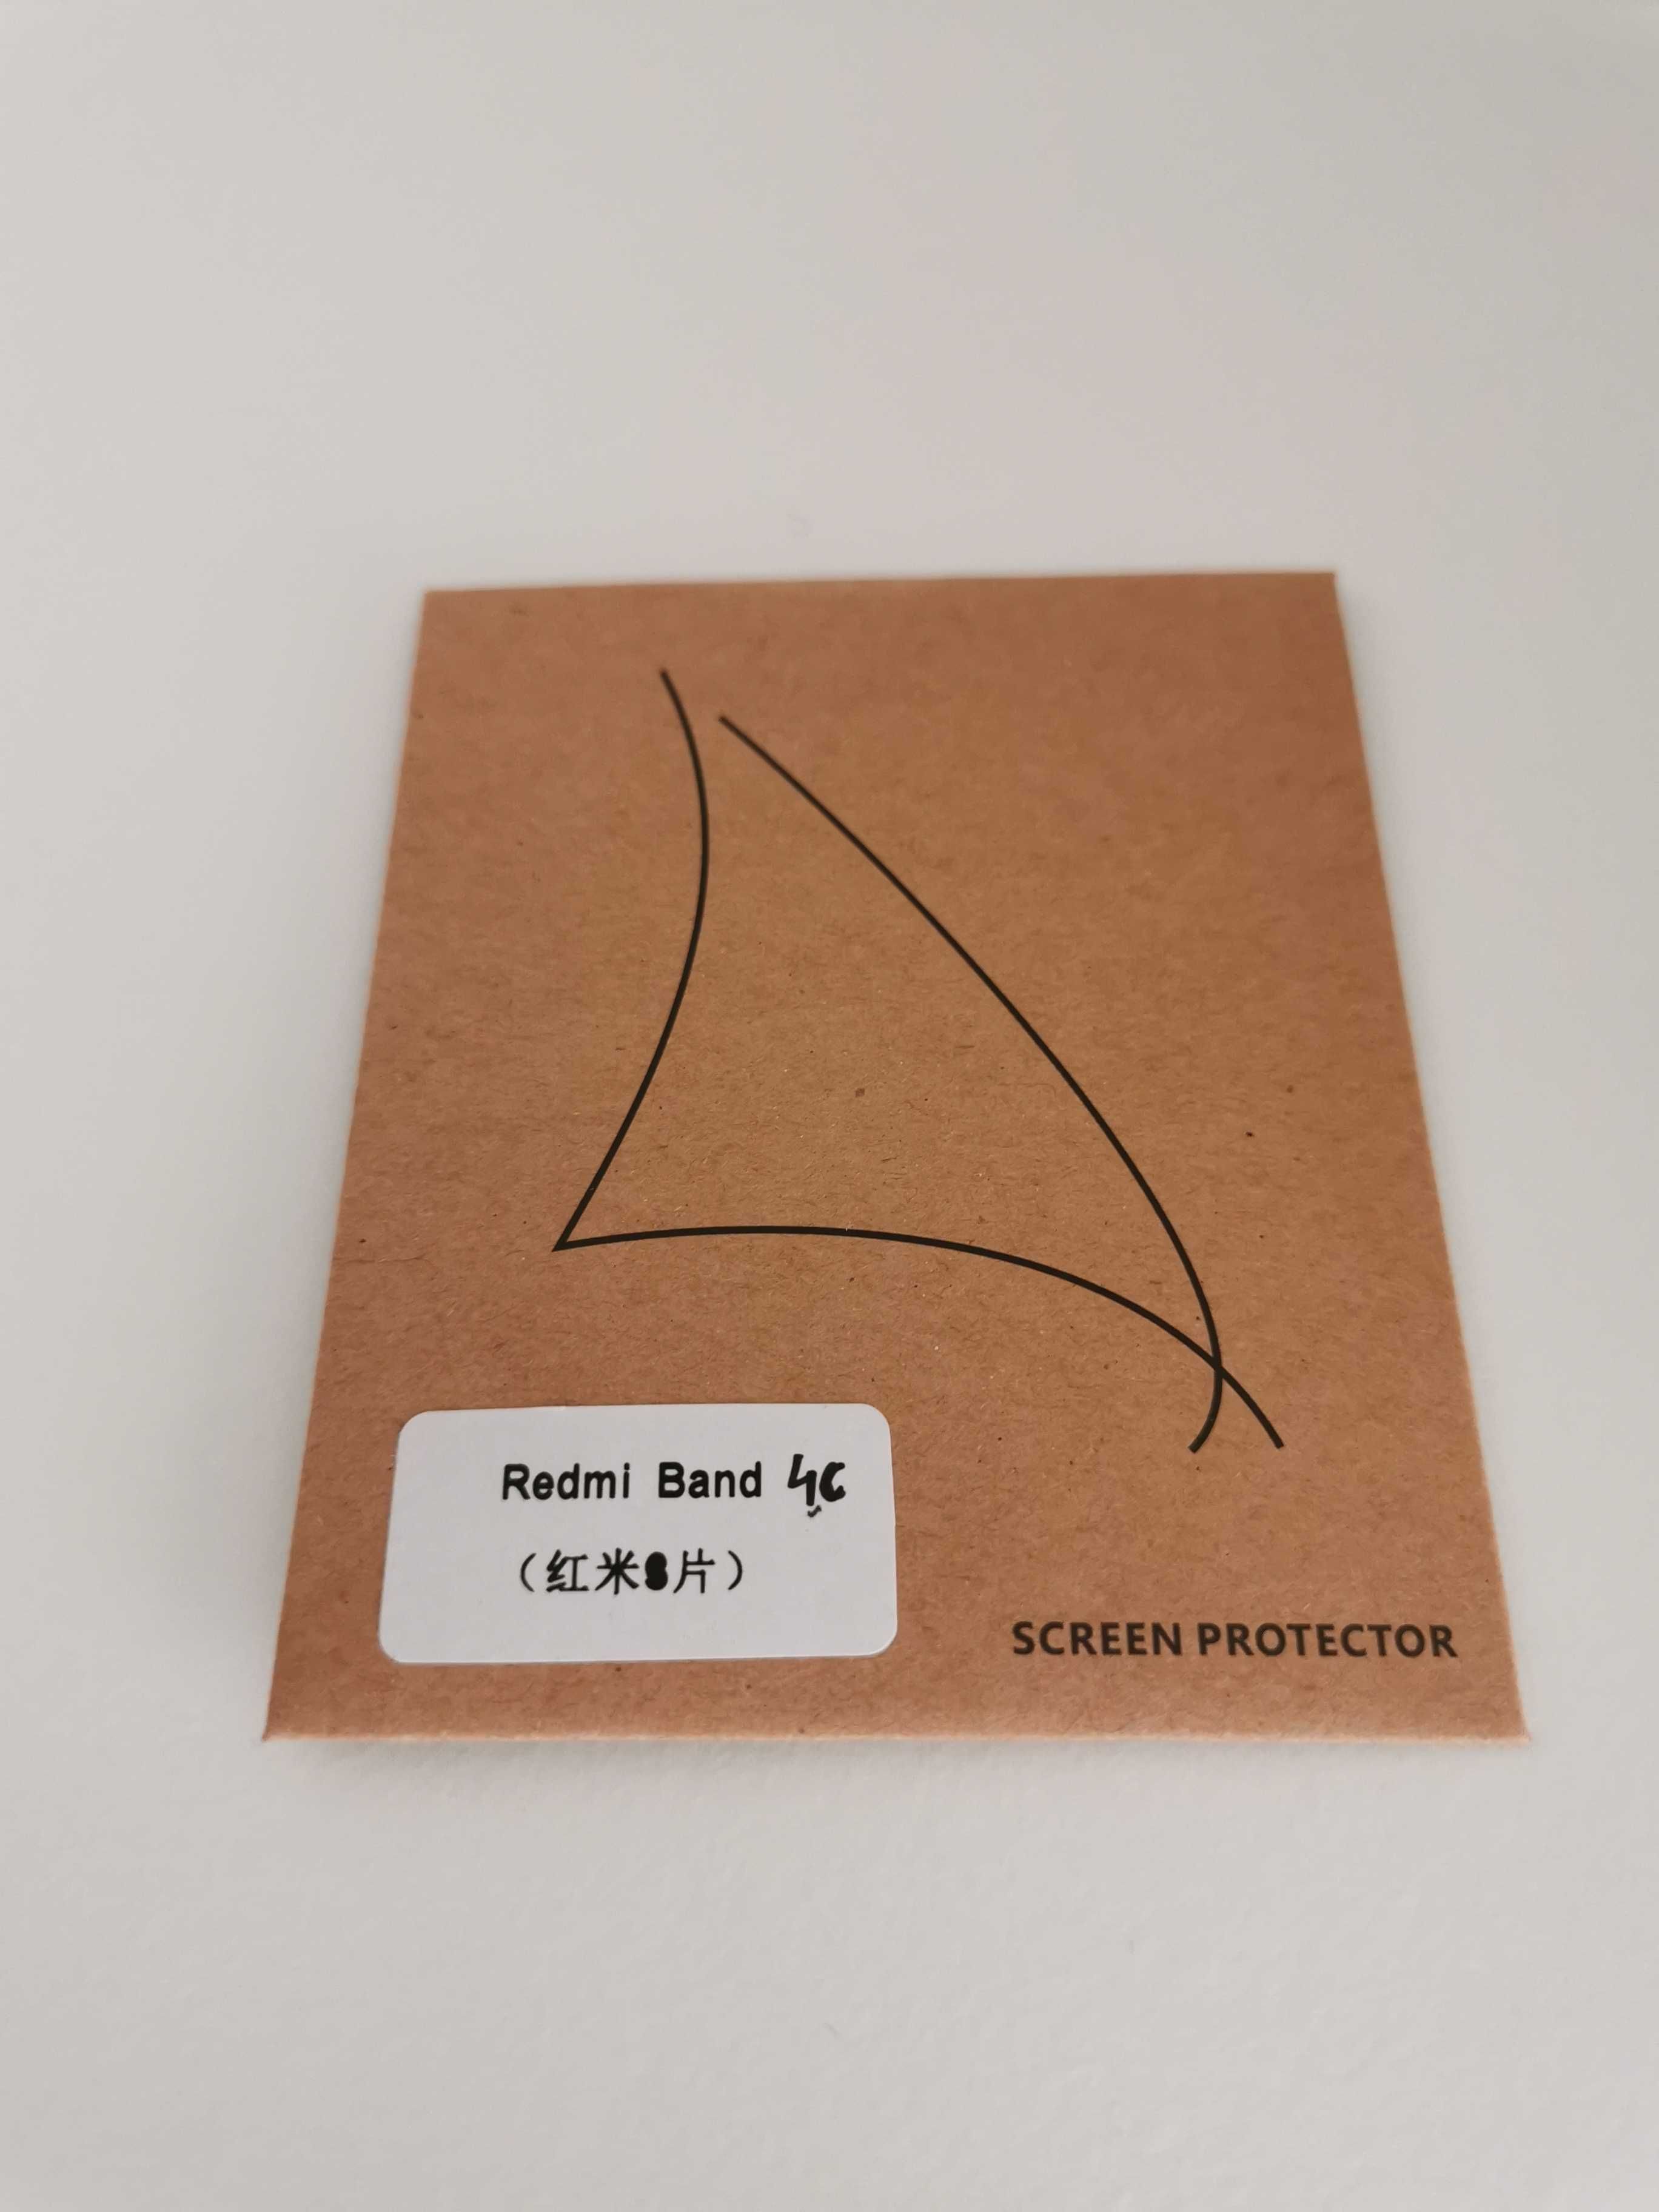 Película de proteção para Xiaomi Mi Band 4C